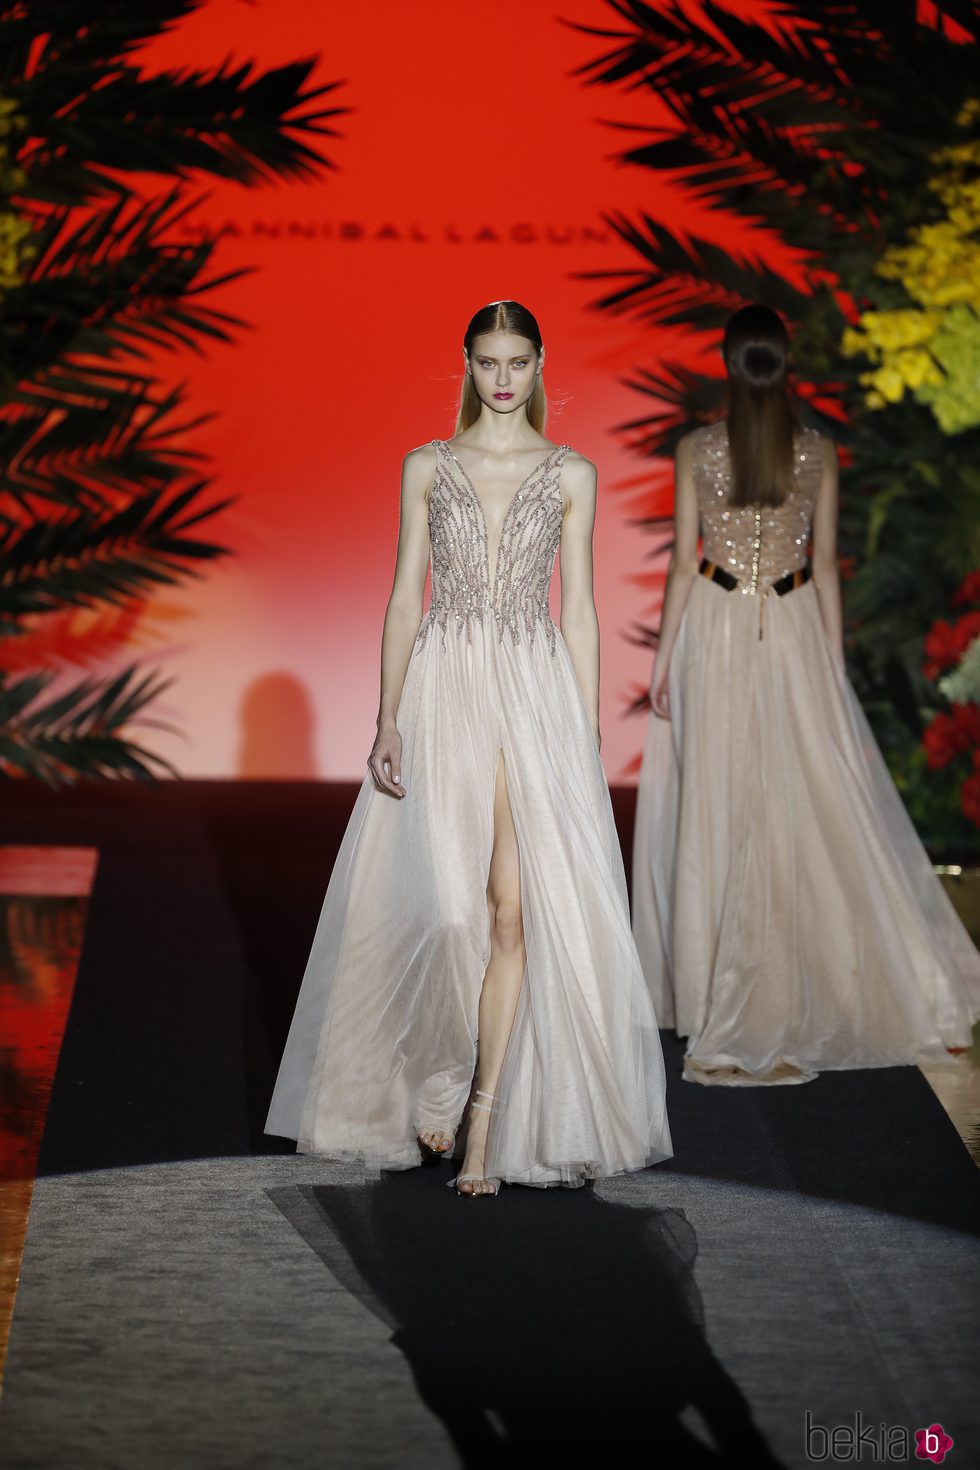 Vestido con escote en V blanco  de Hannibal Laguna de la coleción Orient Bloom en la Madrid Fashion Week